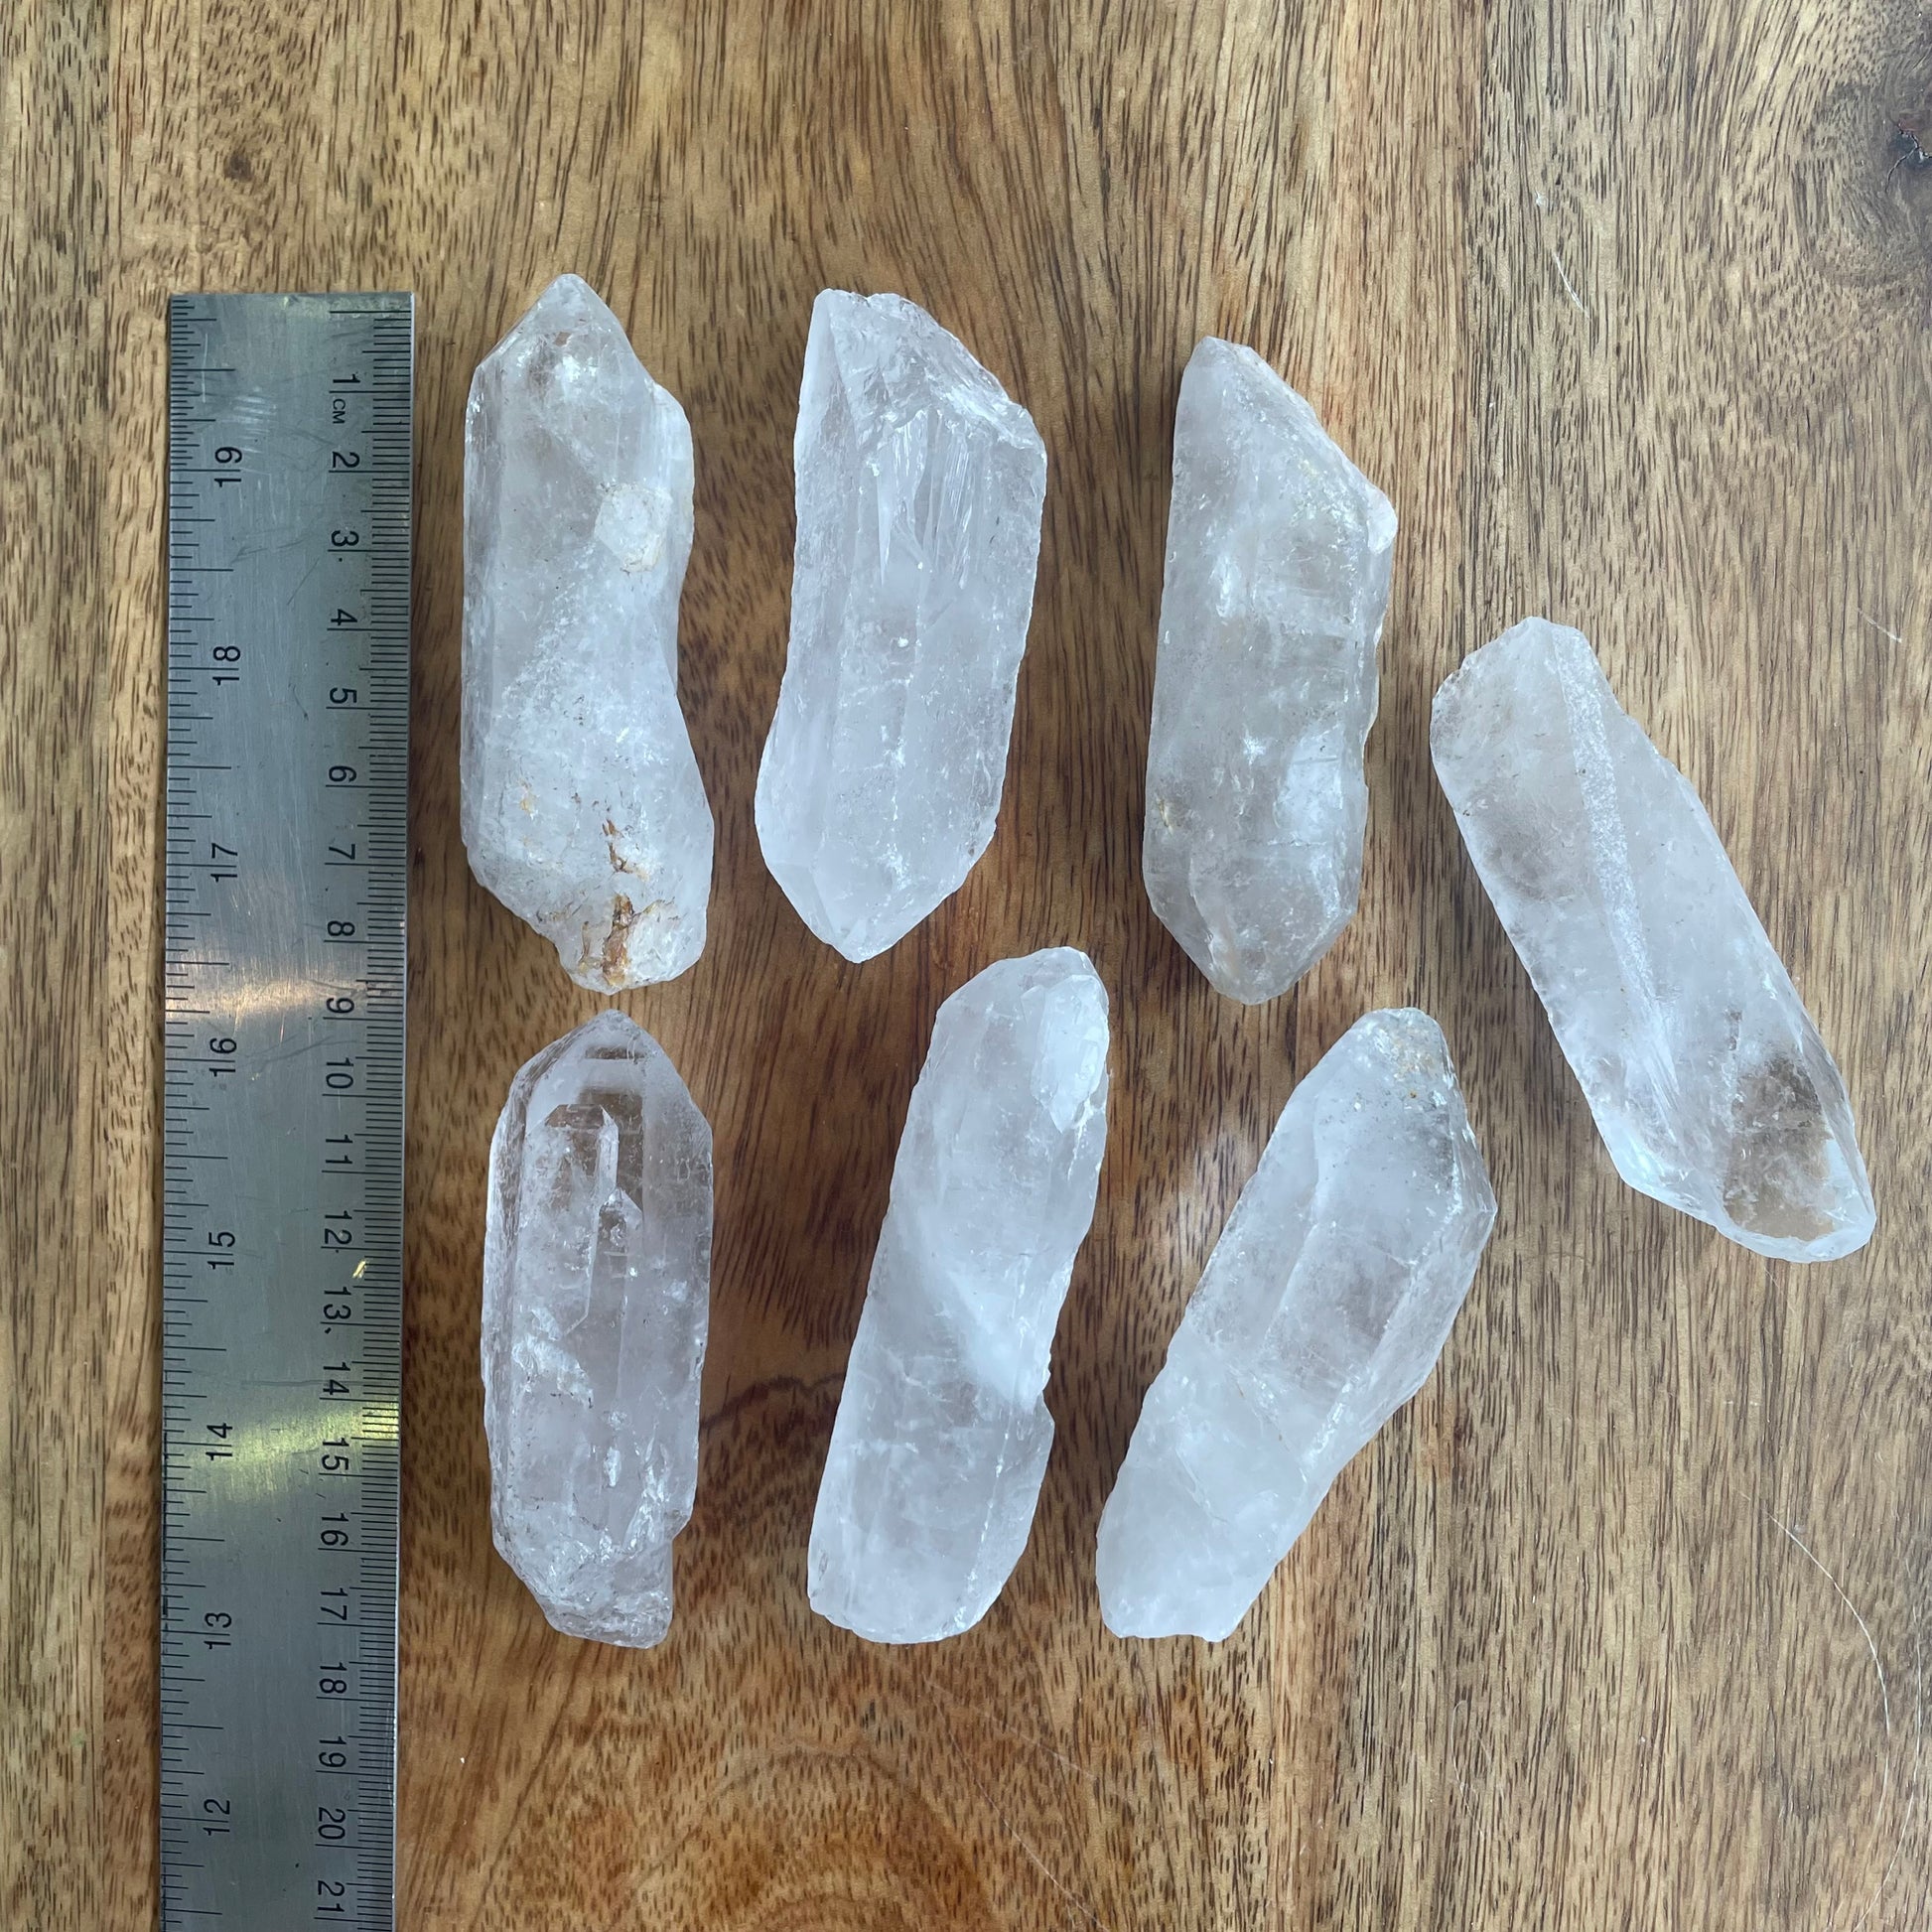 Clear Quartz Crystal Points (8-9cm) - Rivendell Shop